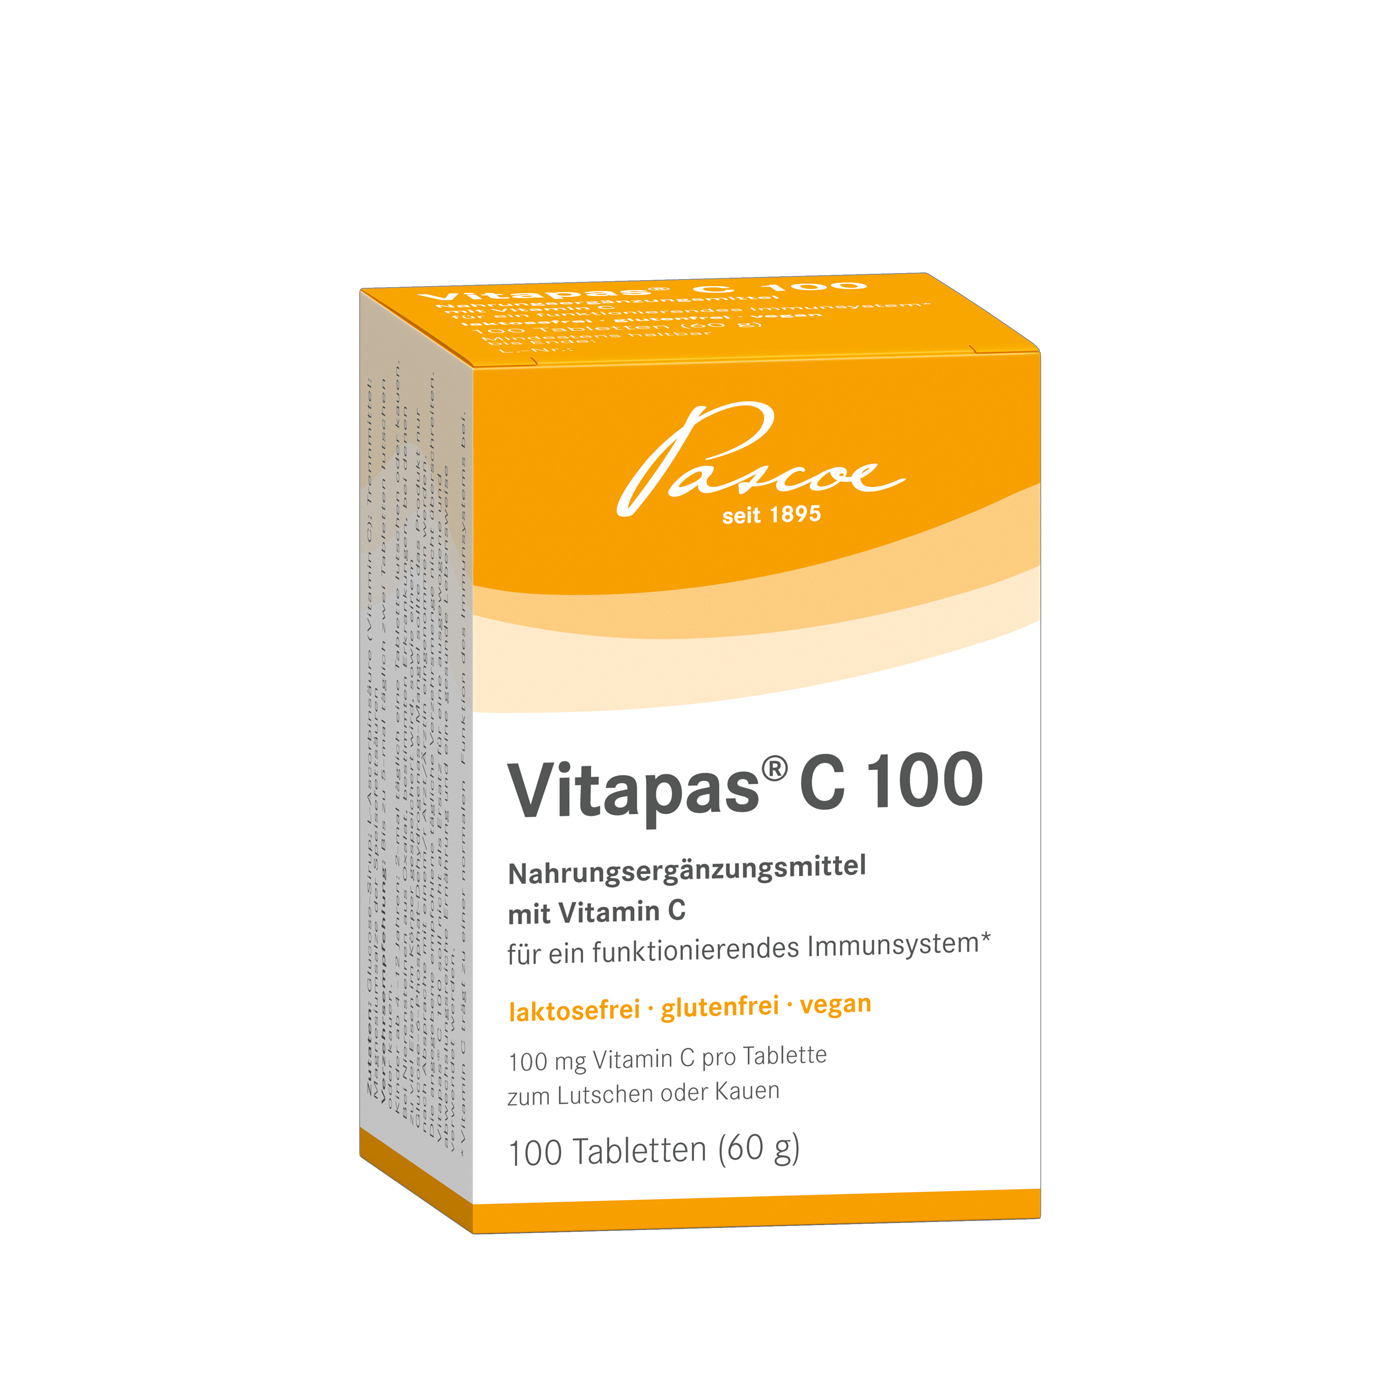 Vitapas C 100 Packshot